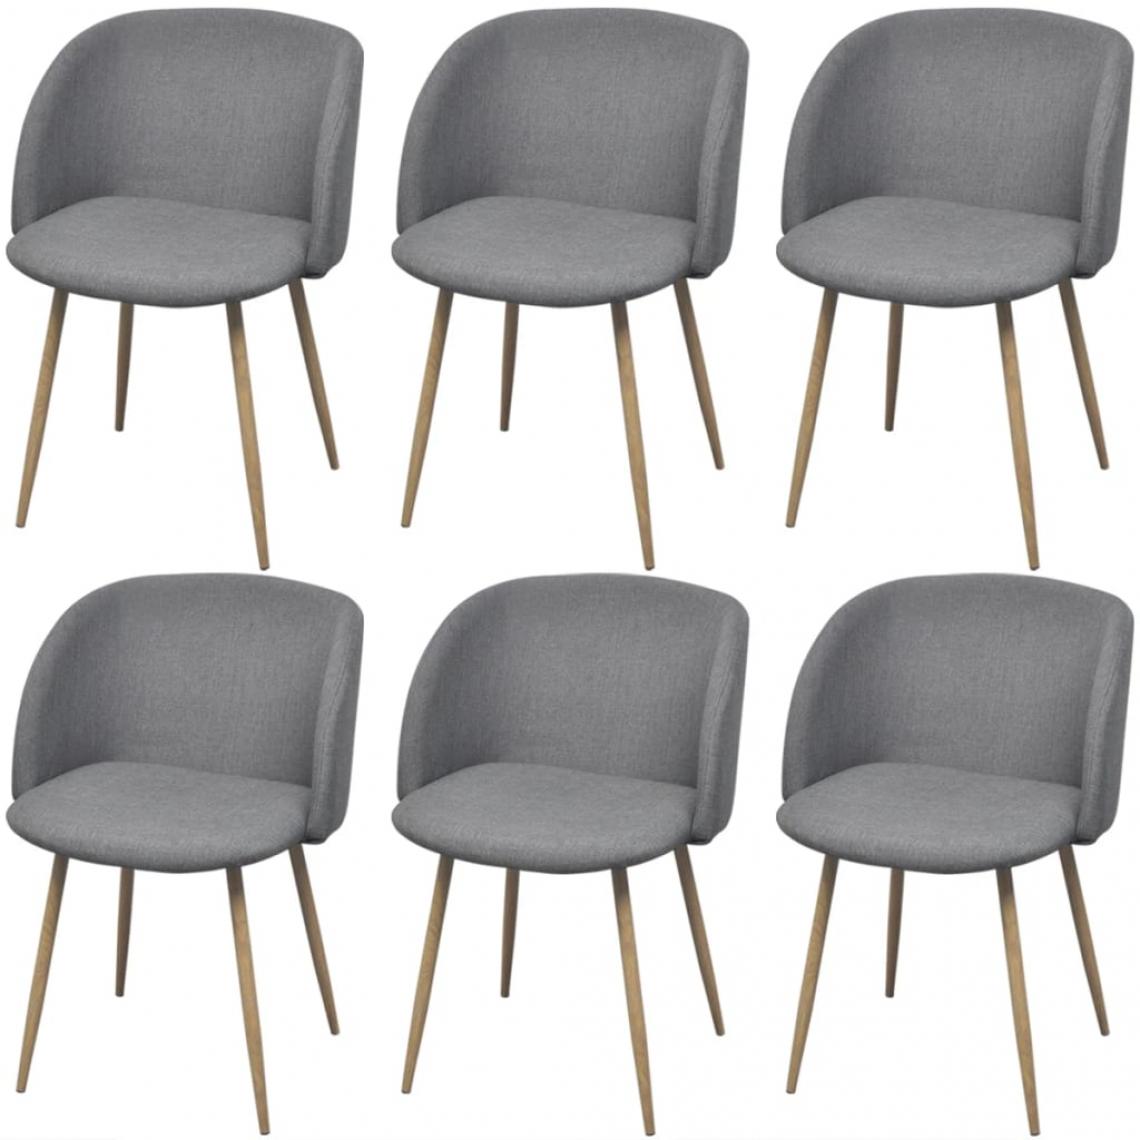 Decoshop26 - Lot de 6 chaises de salle à manger cuisine design contemporain tissu gris clair CDS022404 - Chaises